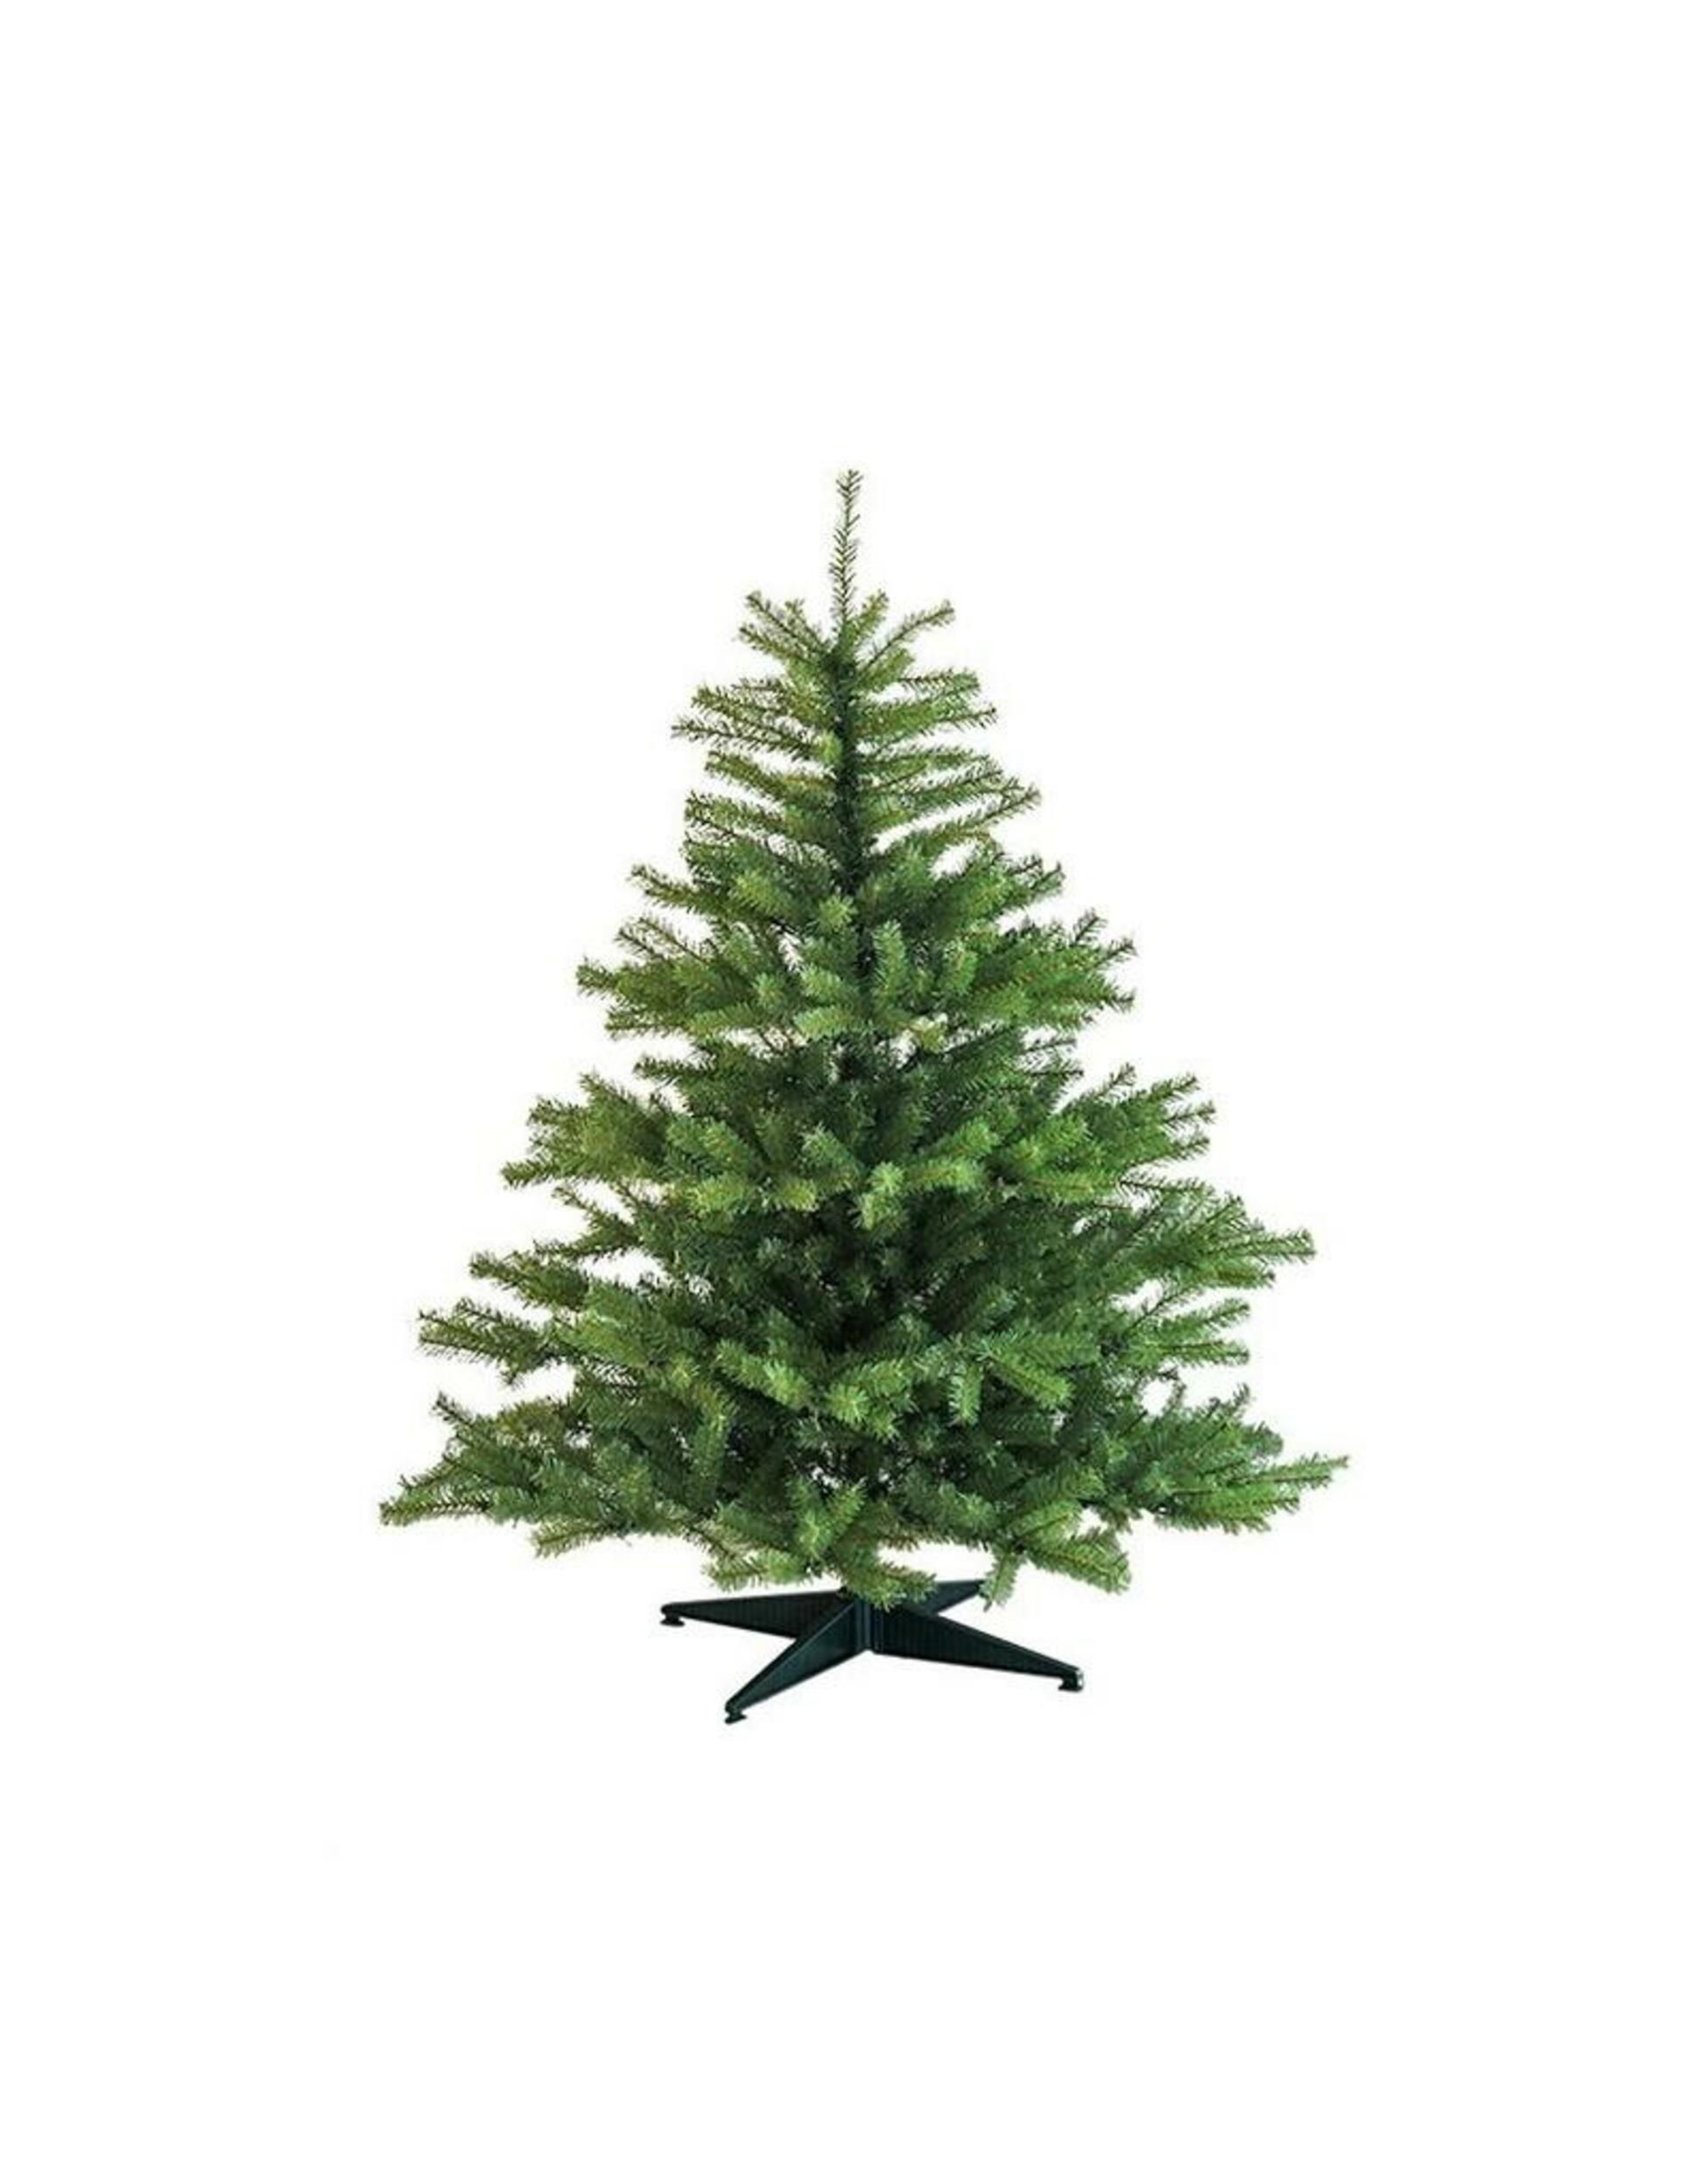 DecoLED Umělý vánoční stromek 150 cm, smrček Naturalna s 2D jehličím